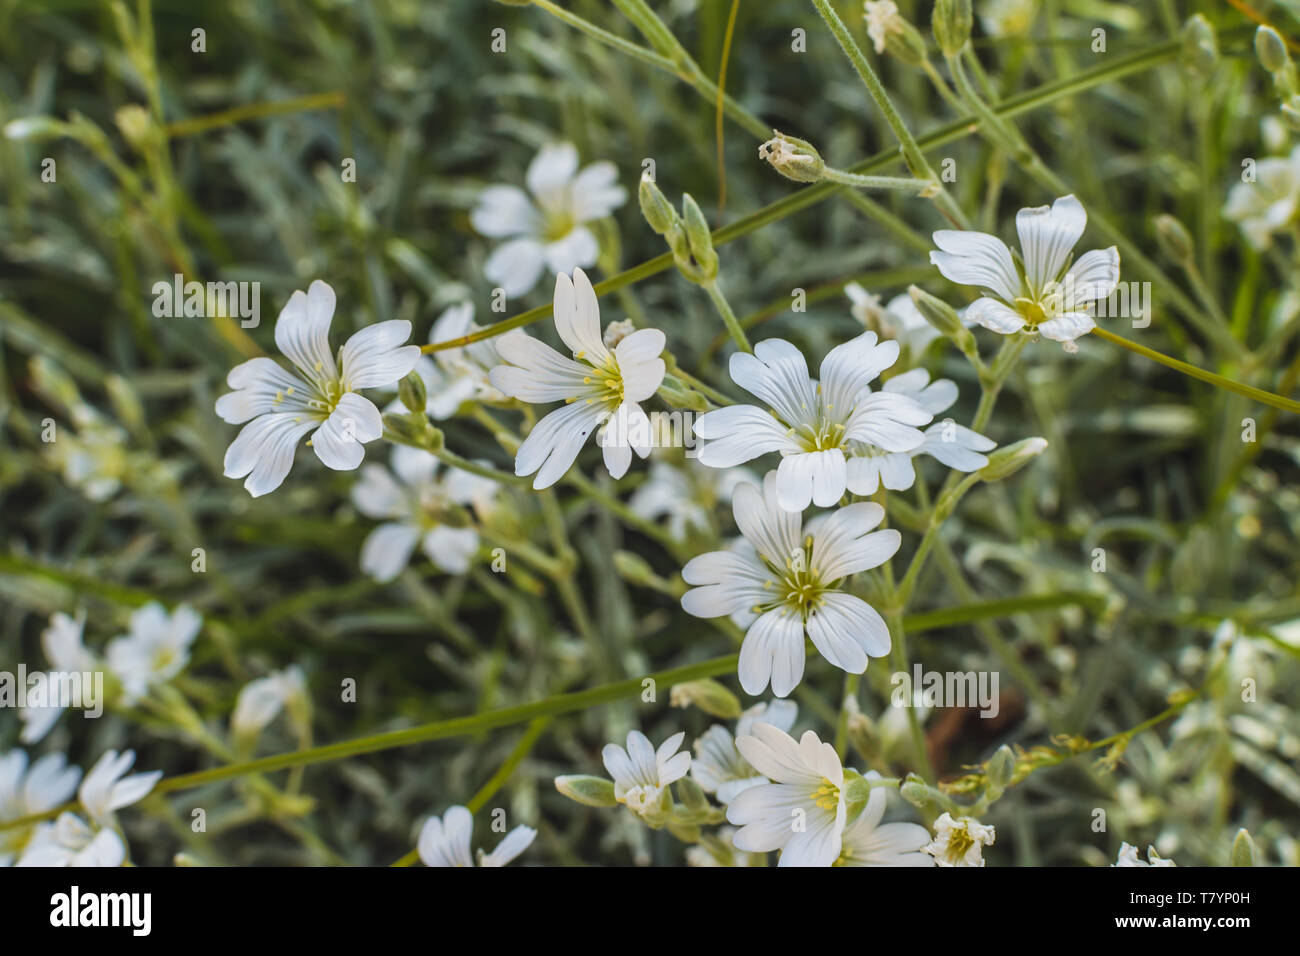 Kleine weiße Blumen im Garten Stockfotografie - Alamy